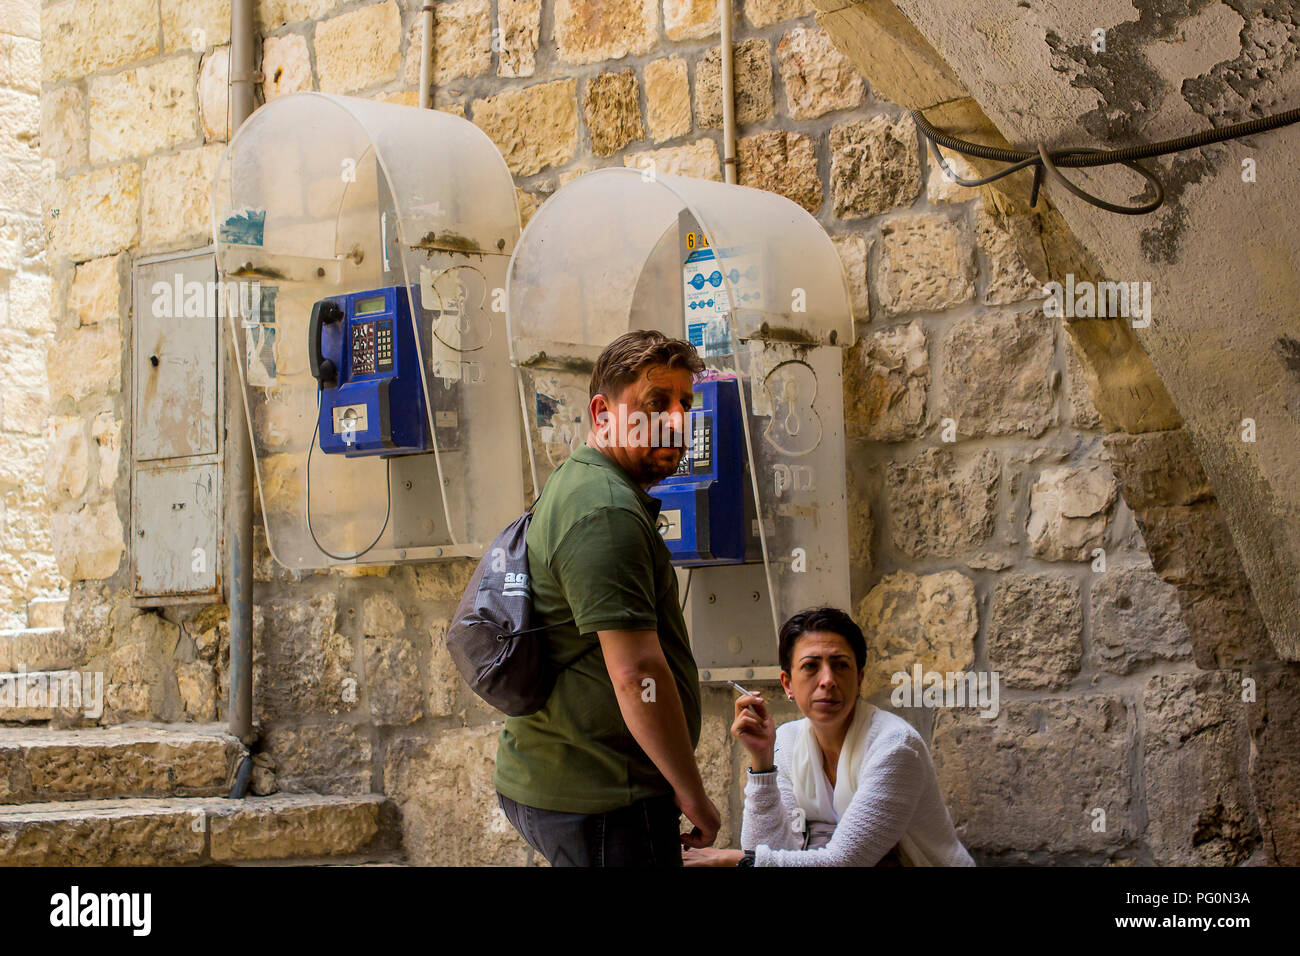 10 maggio 2018 turisti prendono tempo fuori accanto a una coppia di telefoni pubblici nella vecchia città murata di Gerusalemme Israele Foto Stock